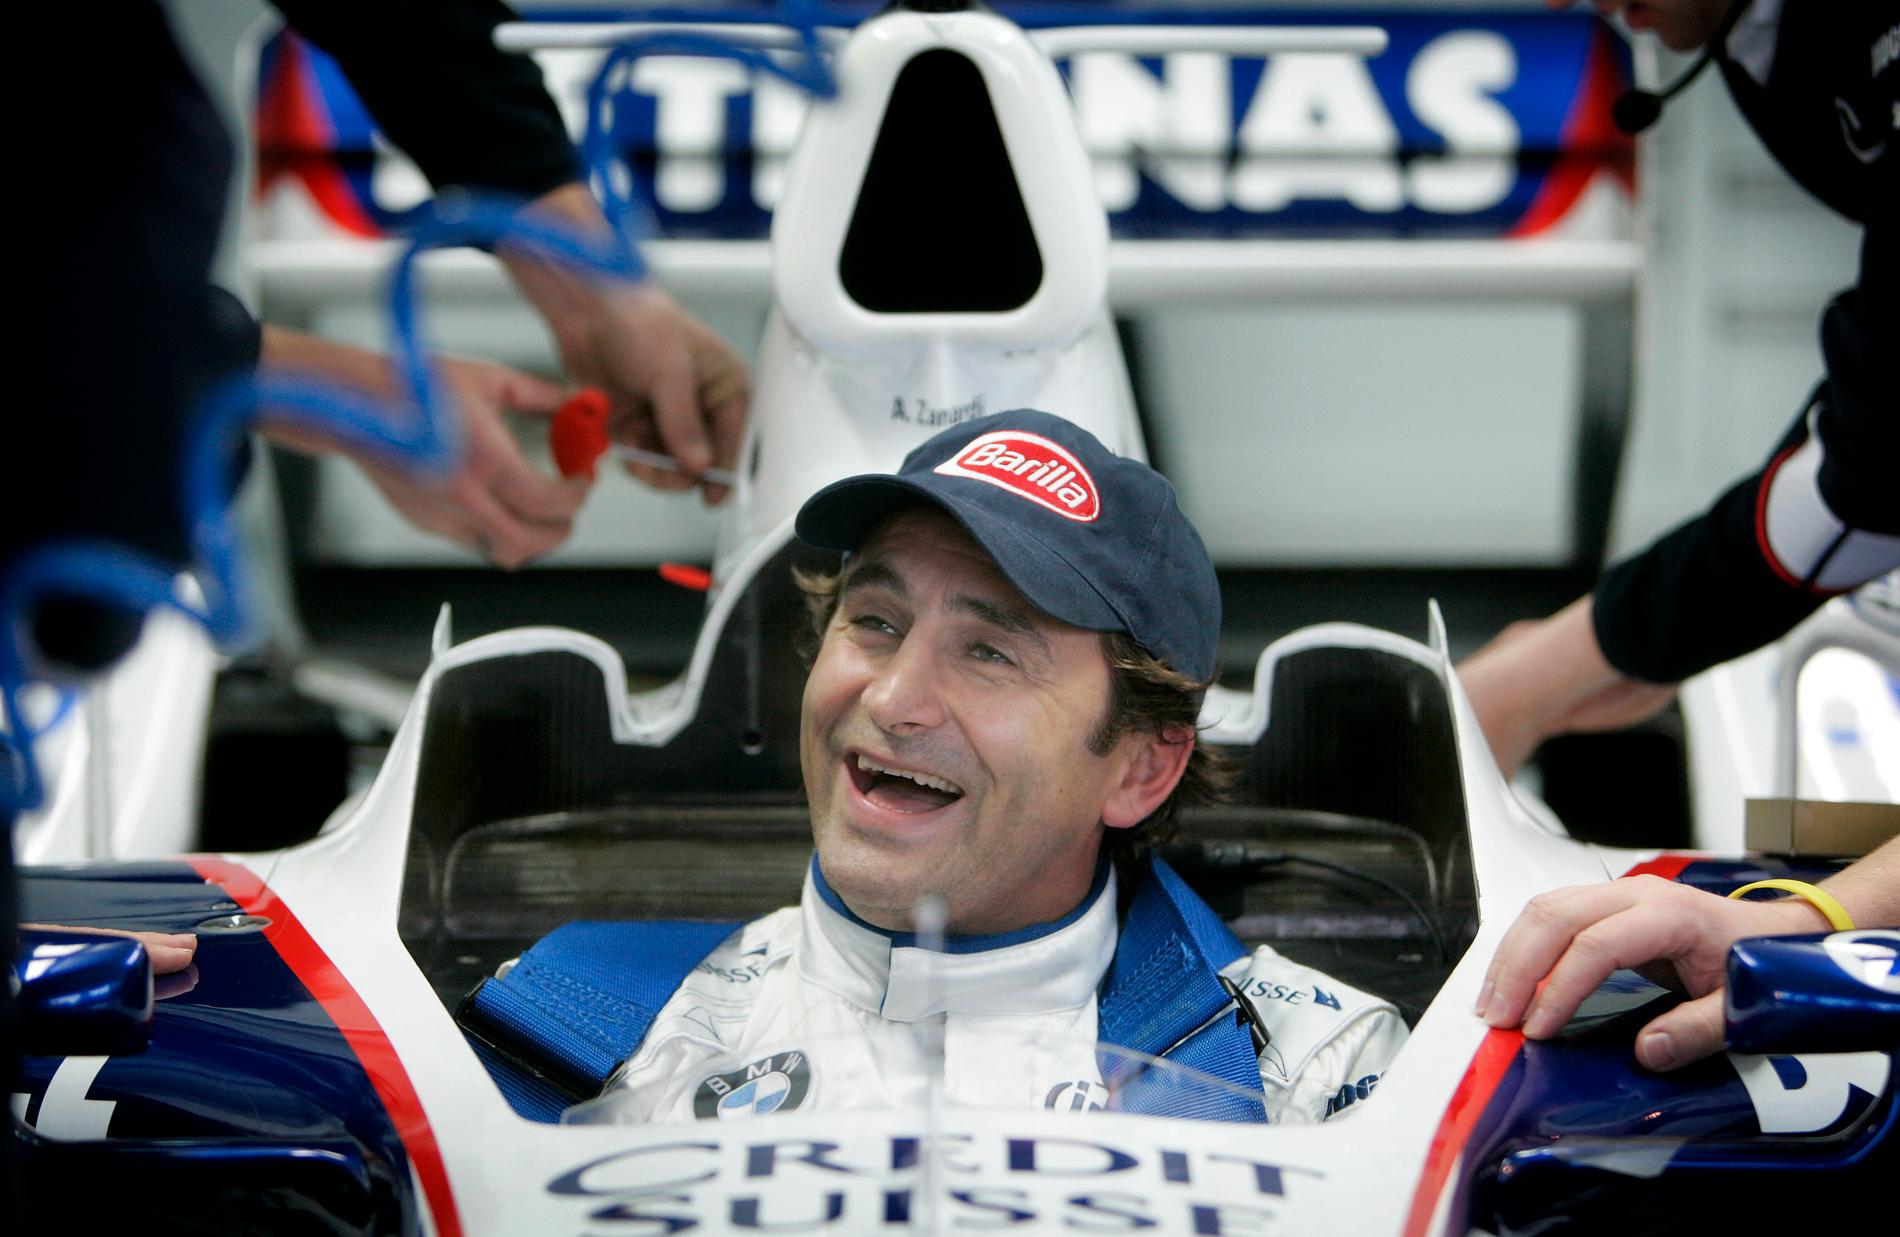 Alex Zanardi var en framgångsrik F1-förare. 